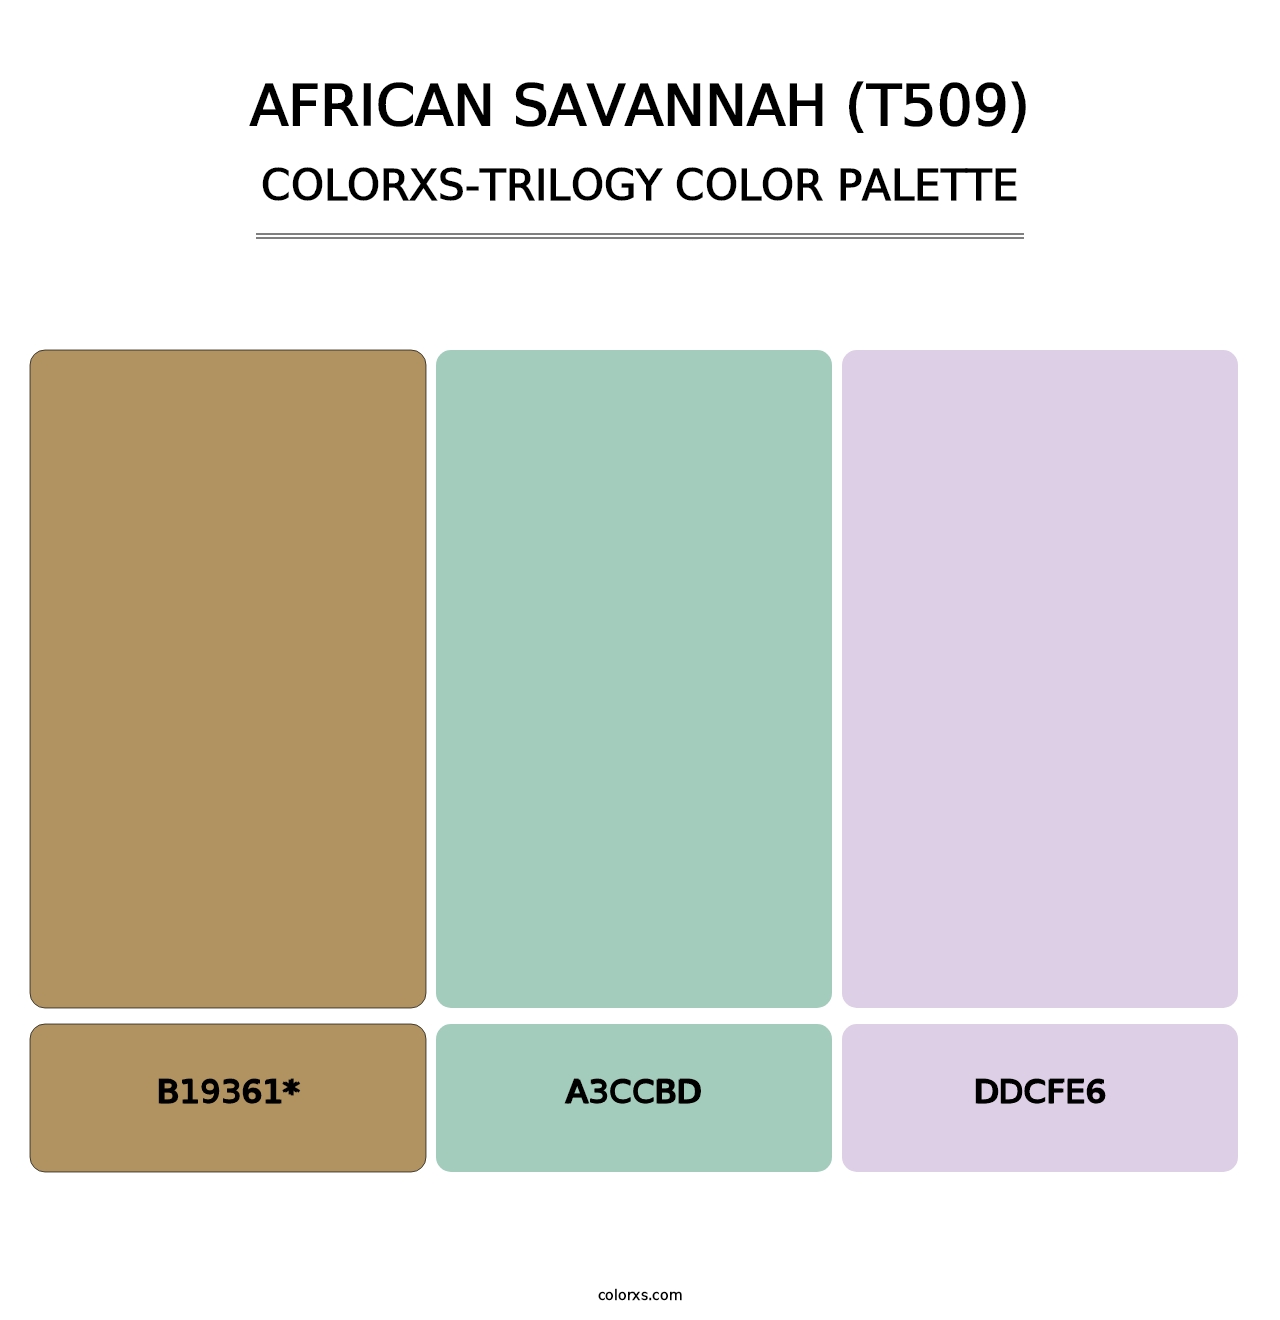 African Savannah (T509) - Colorxs Trilogy Palette